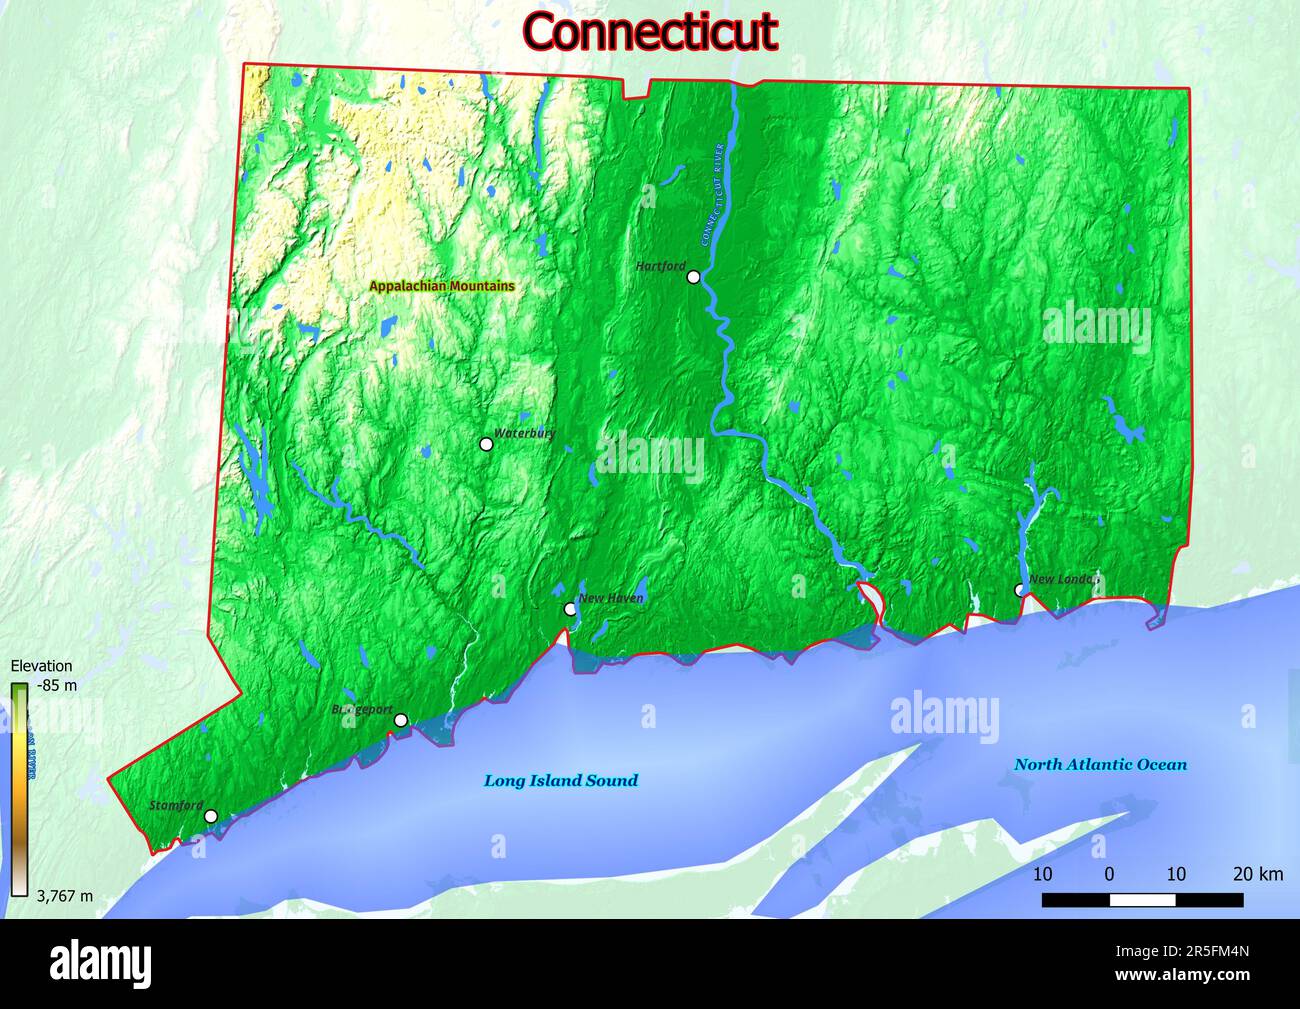 La mappa fisica del Connecticut mostra un terreno variegato con colline ondulate, fertili valli fluviali e fitte foreste. Foto Stock